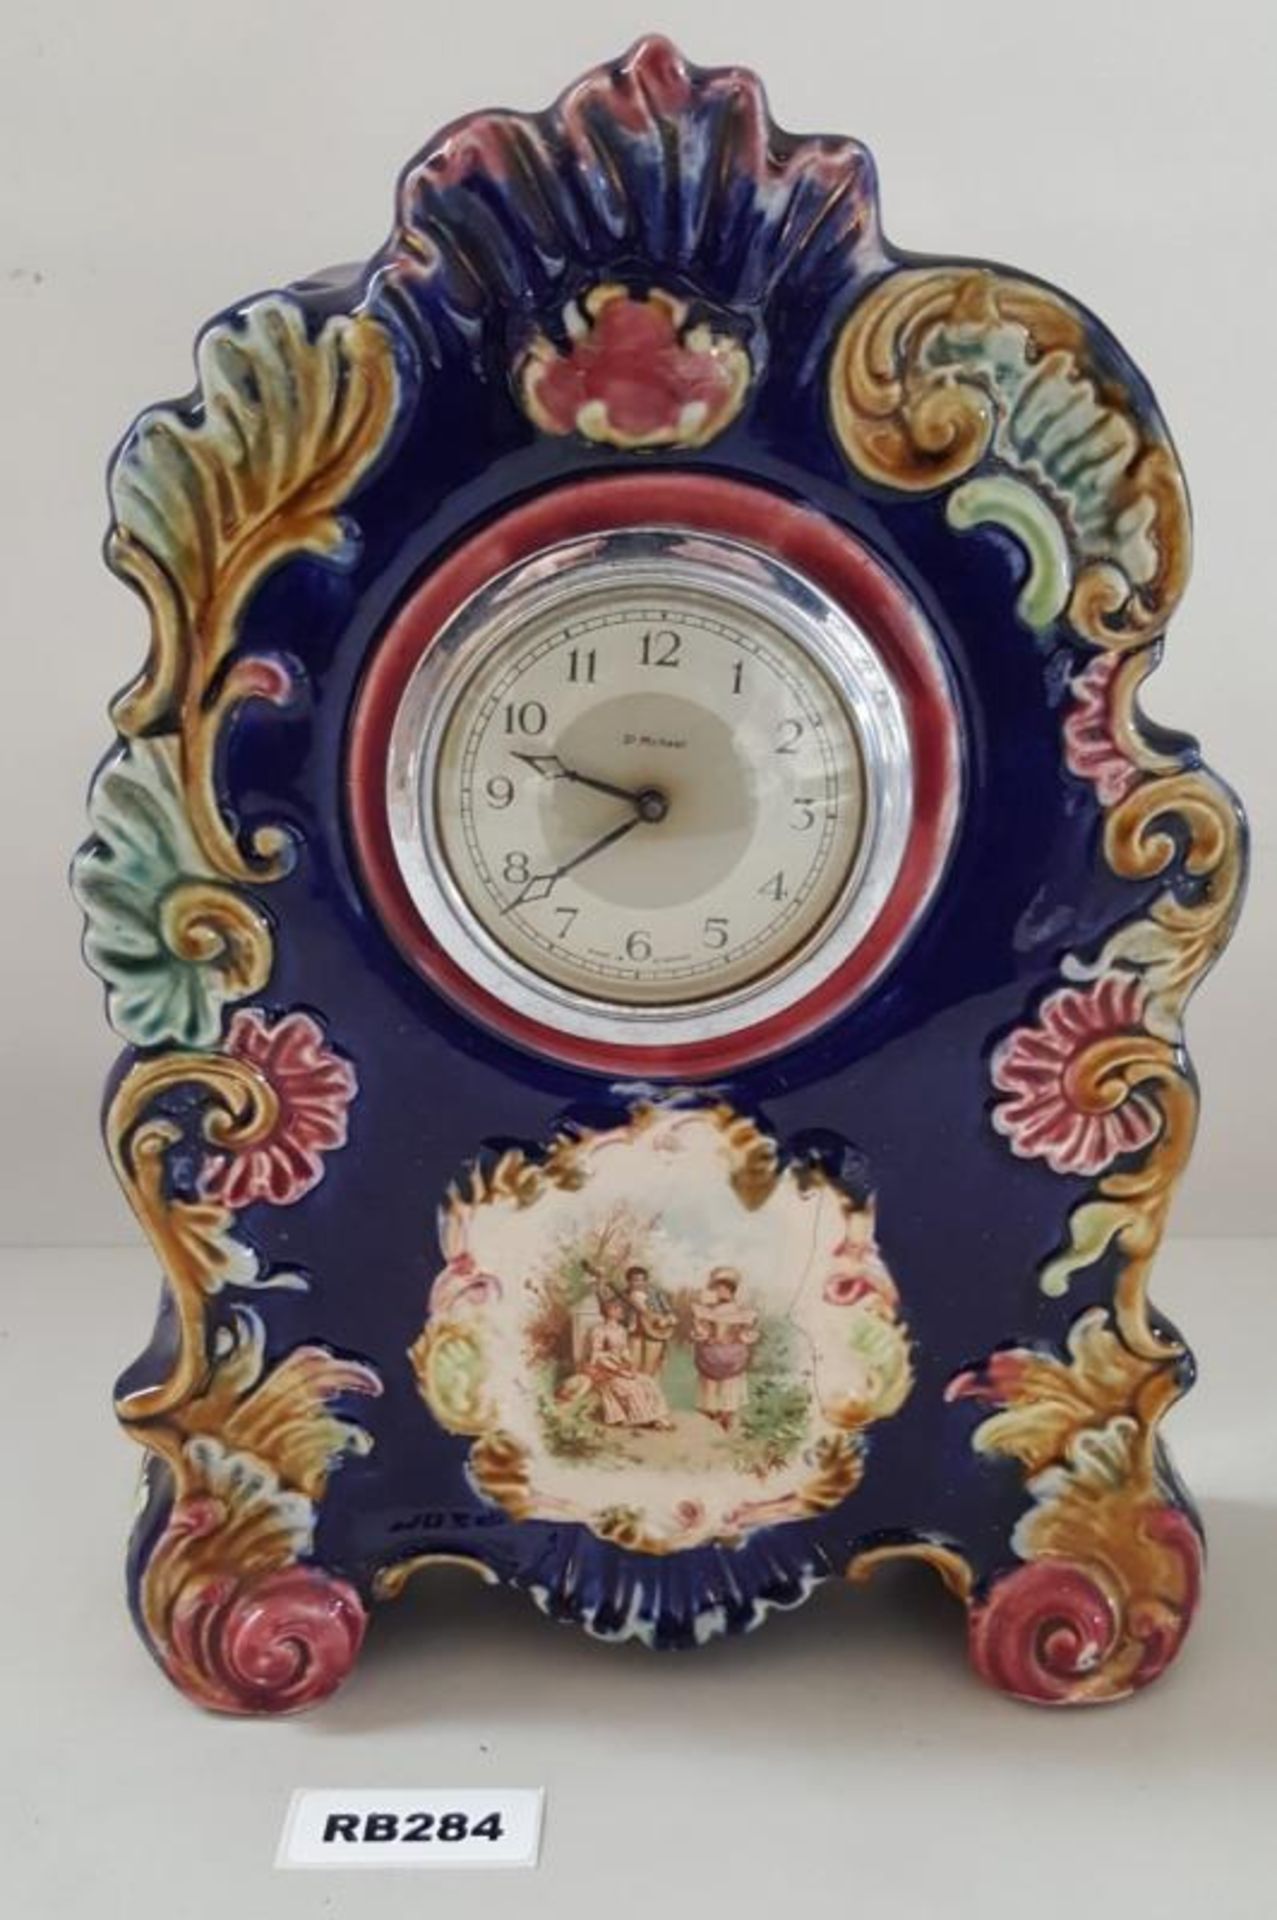 1 x Antique Sc Michael Porcelain Clock - Ref RB284 E - Dimensions: H32/L23/W7 cm - CL334 - Location: